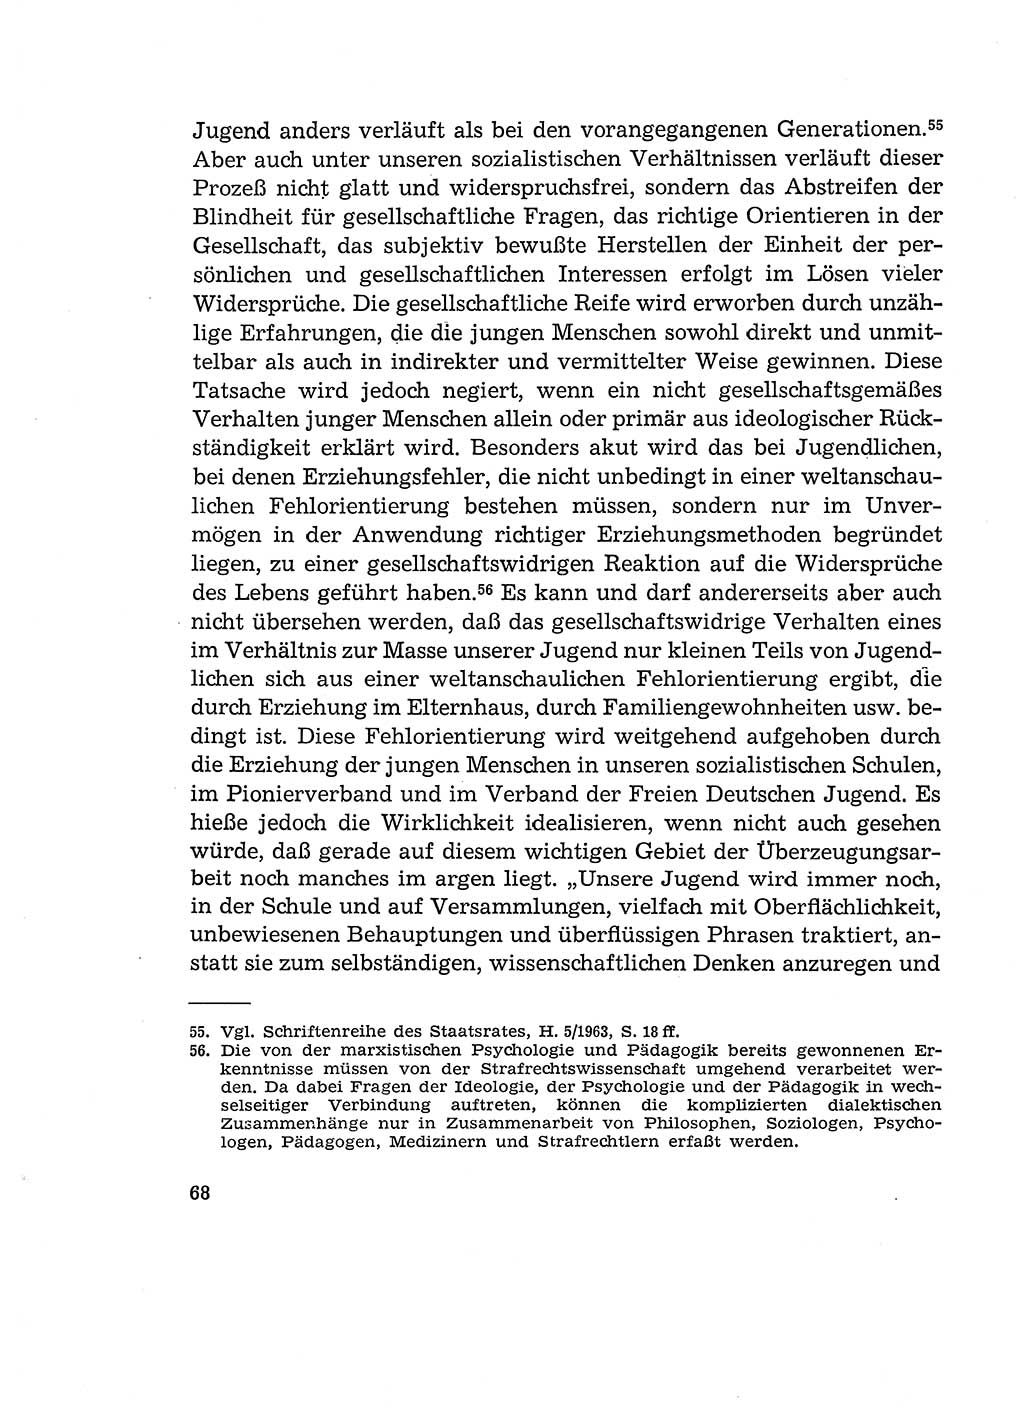 Verantwortung und Schuld im neuen Strafgesetzbuch (StGB) [Deutsche Demokratische Republik (DDR)] 1964, Seite 68 (Verantw. Sch. StGB DDR 1964, S. 68)